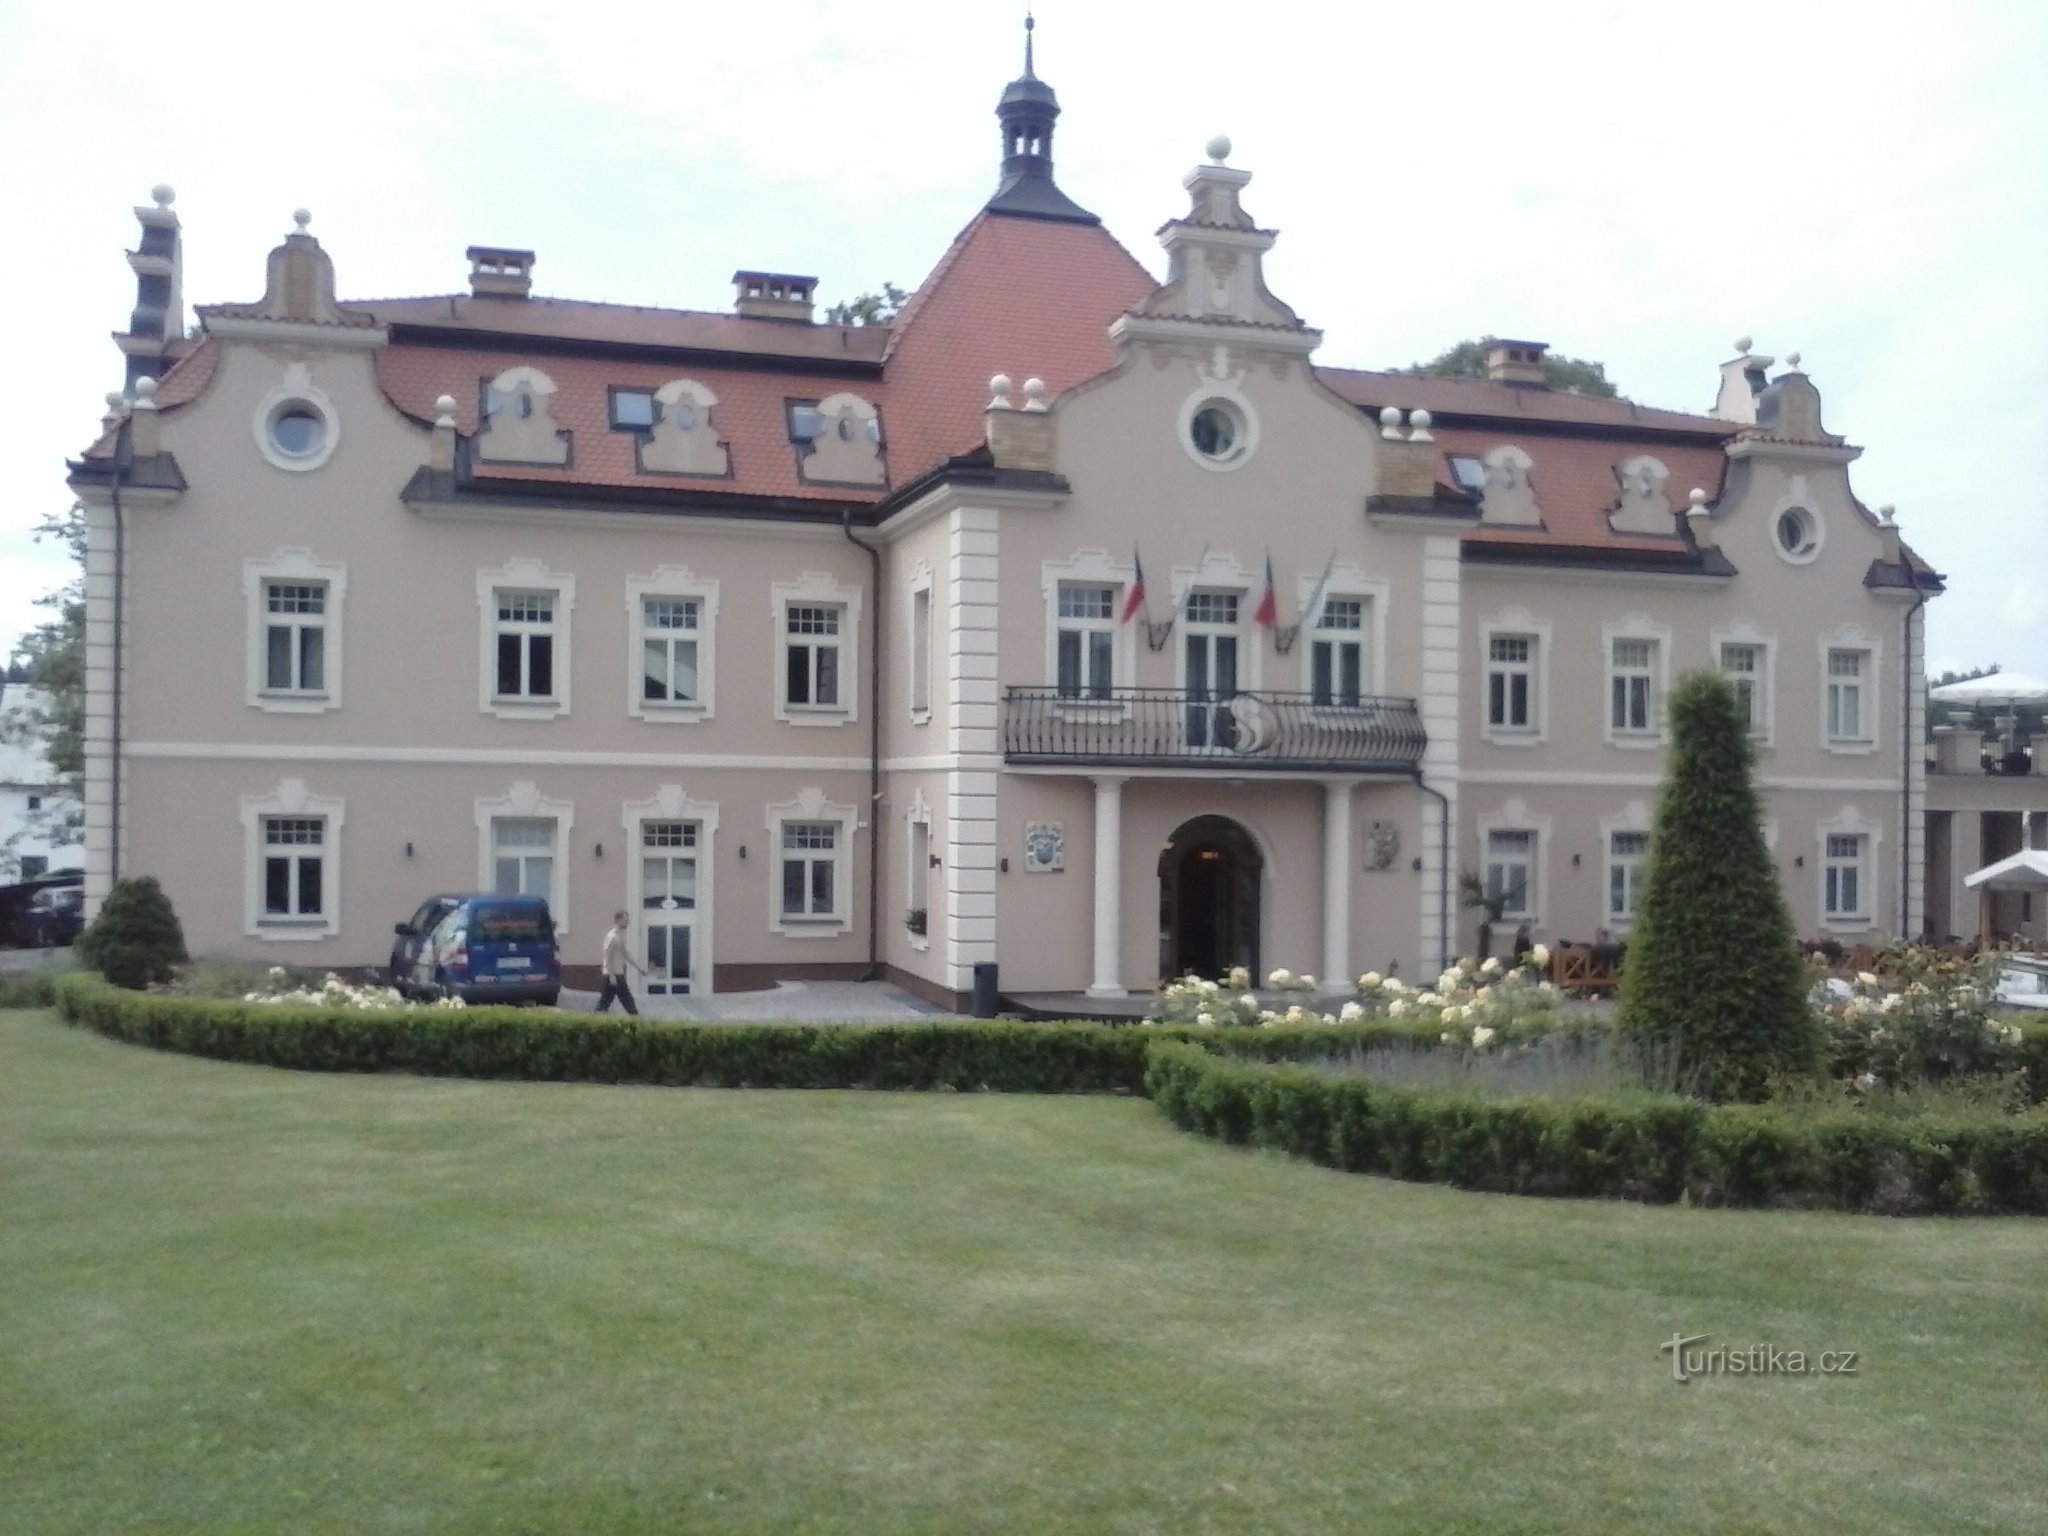 Lâu đài Berchtold hiện tại